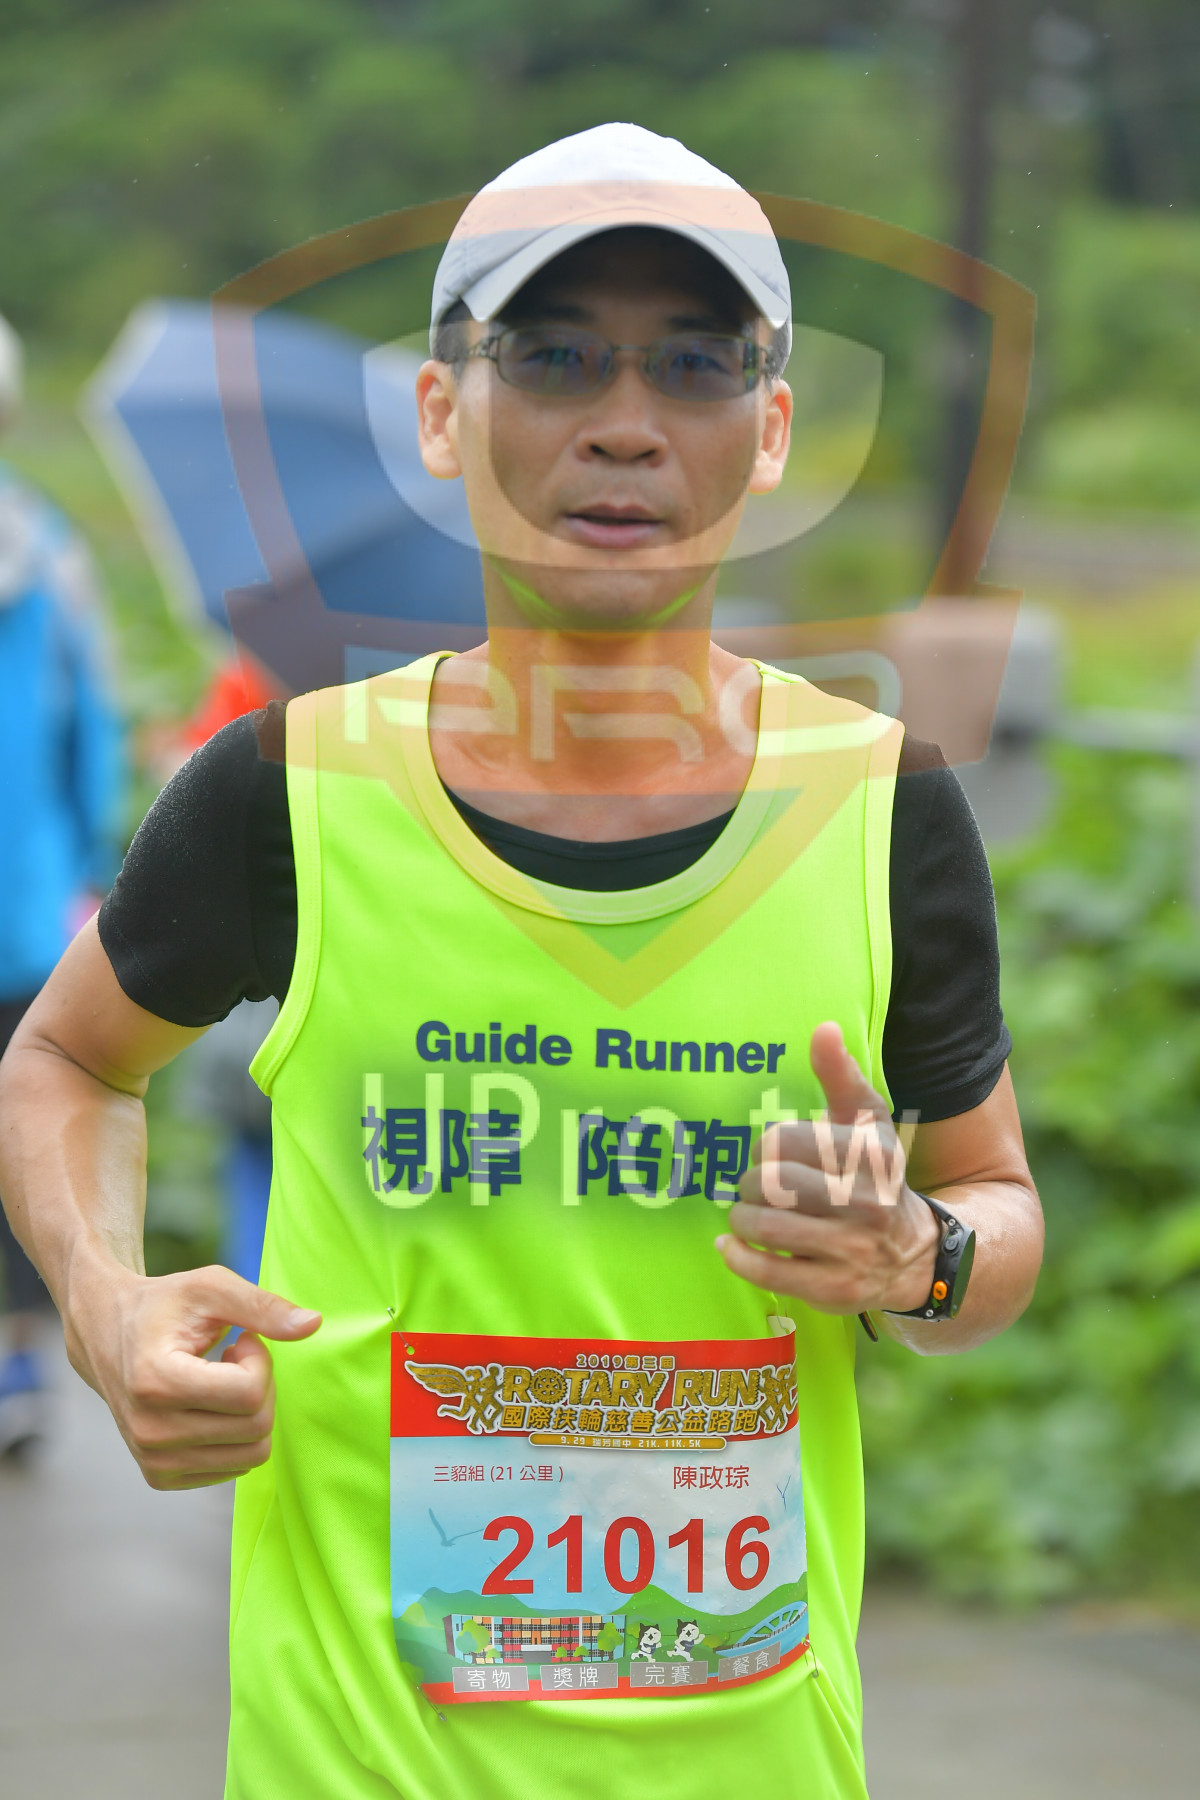 Guide Runner,,20008B,ROTARY RUN,,9 2,21. 11K. 5,(21),,21016, |